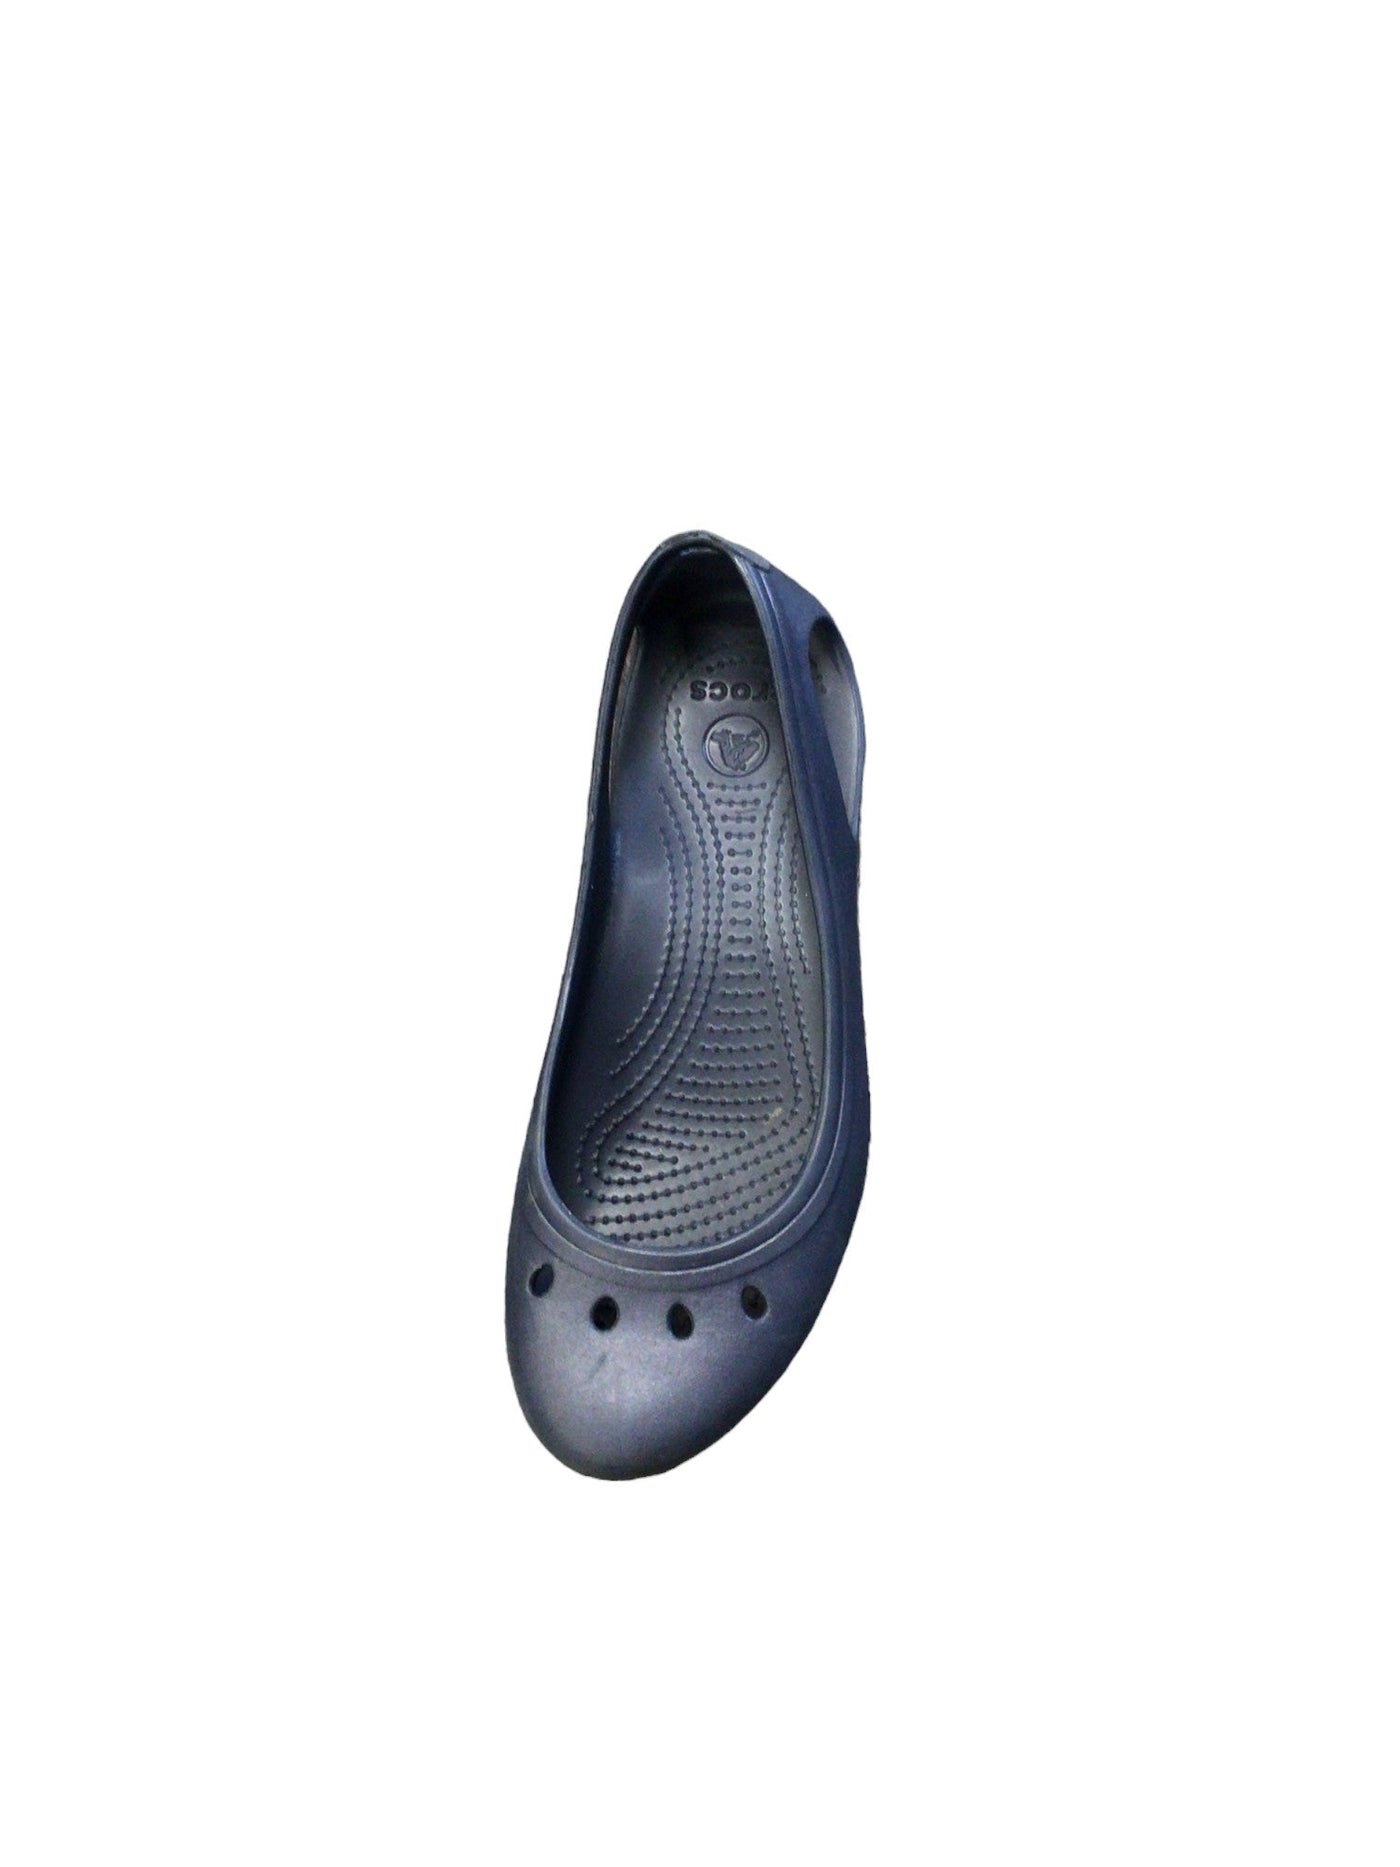 CROCS Women Flat Shoes Regular fit in Blue - Size 9 | 19.99 $ KOOP